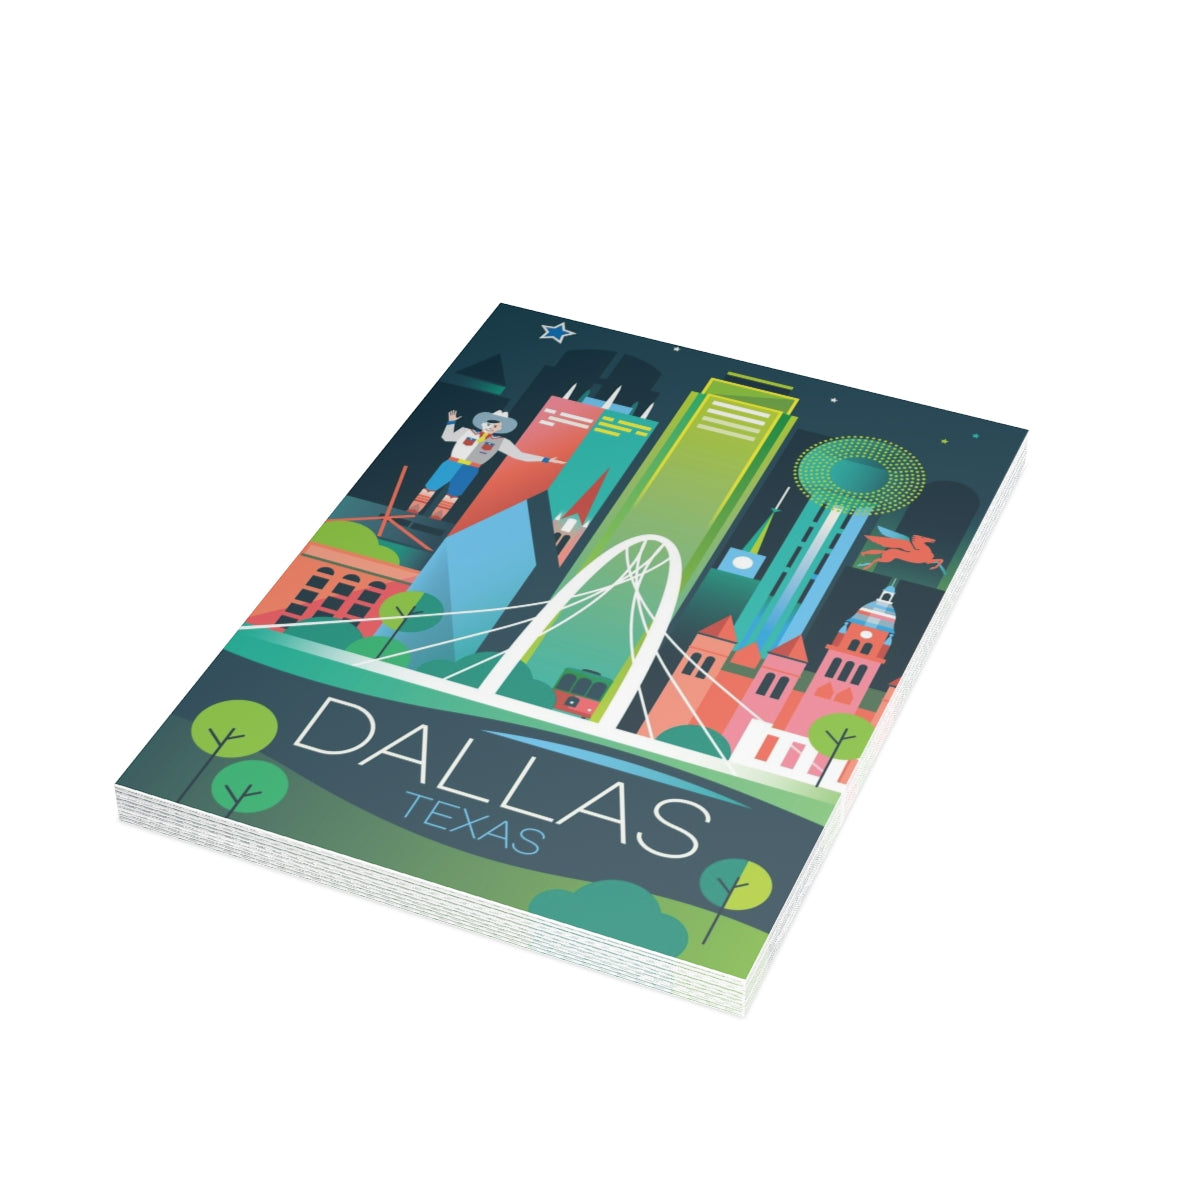 Dallas gefaltete matte Notizkarten + Umschläge (10 Stück) 